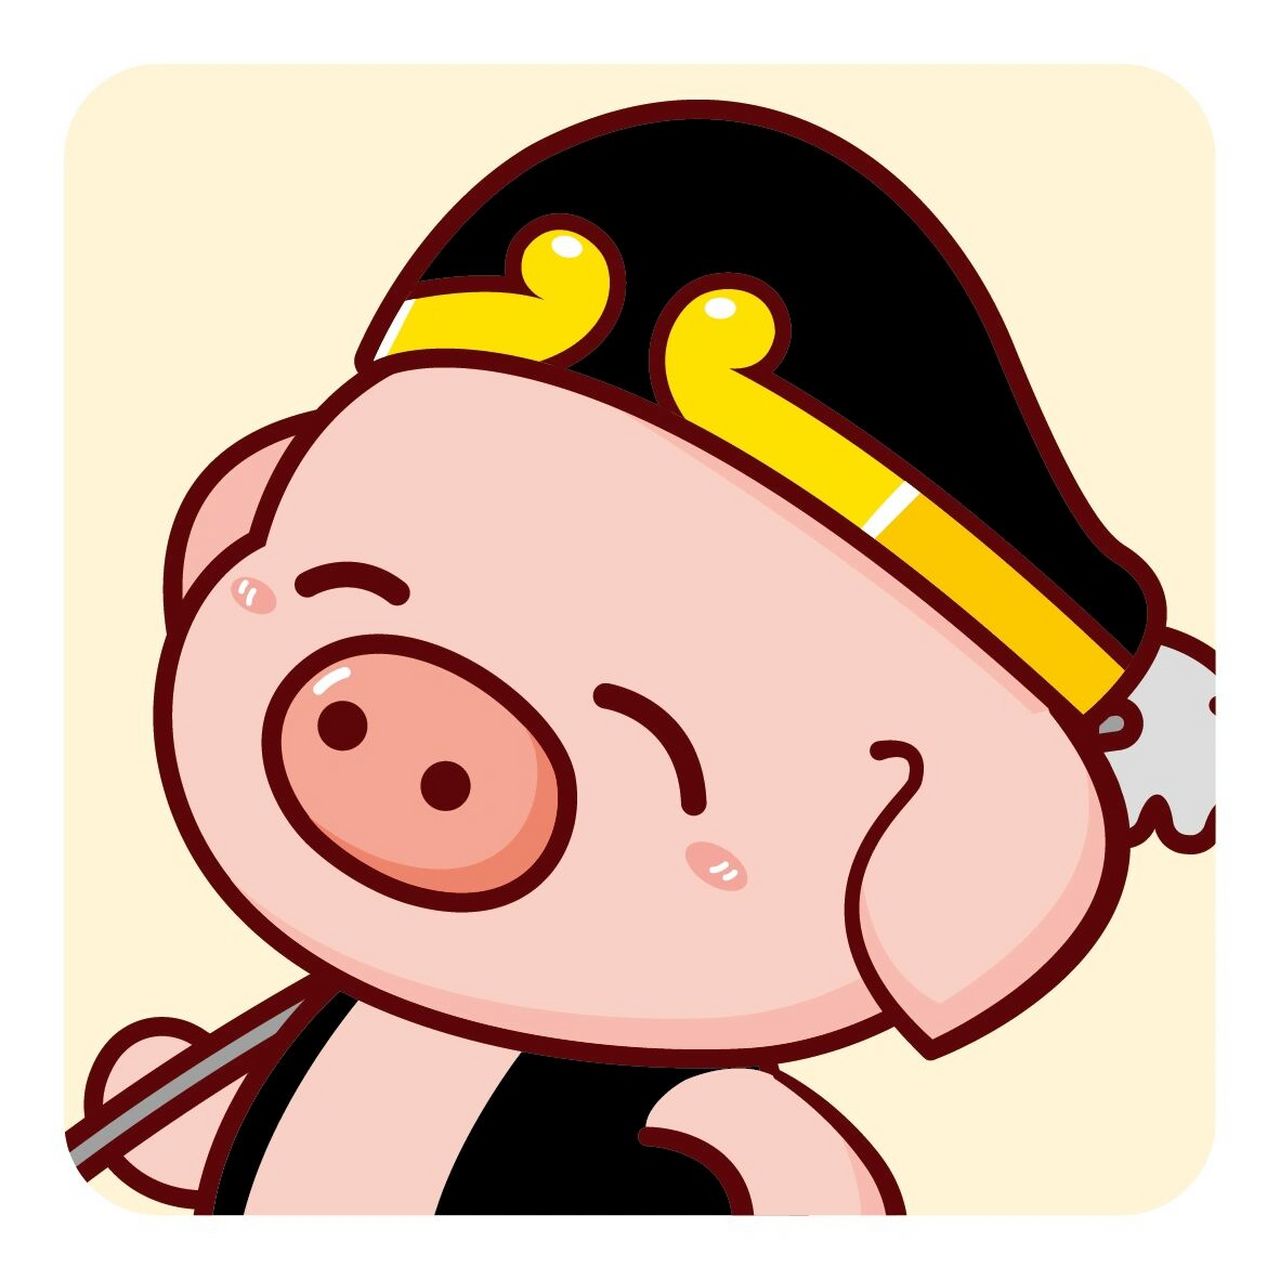 猪八戒漫画搞笑图片